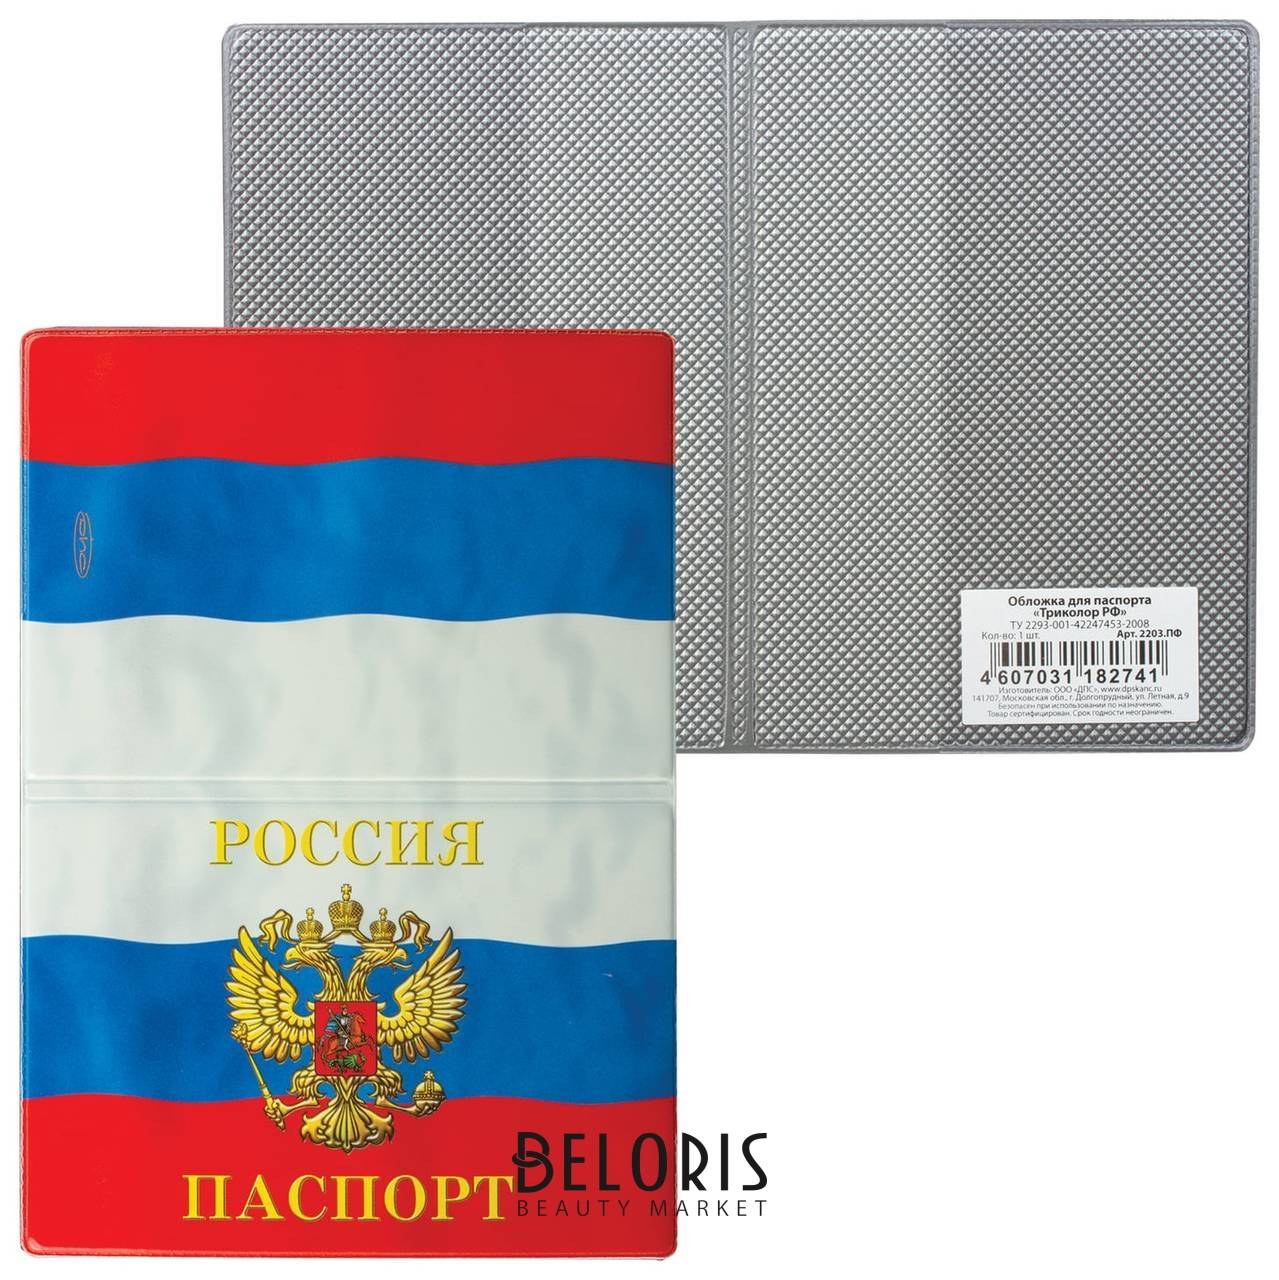 Обложка для паспорта Триколор, горизонтальная, пвх, цвета российского триколора, дпс, 2203.пф Dps Kanc